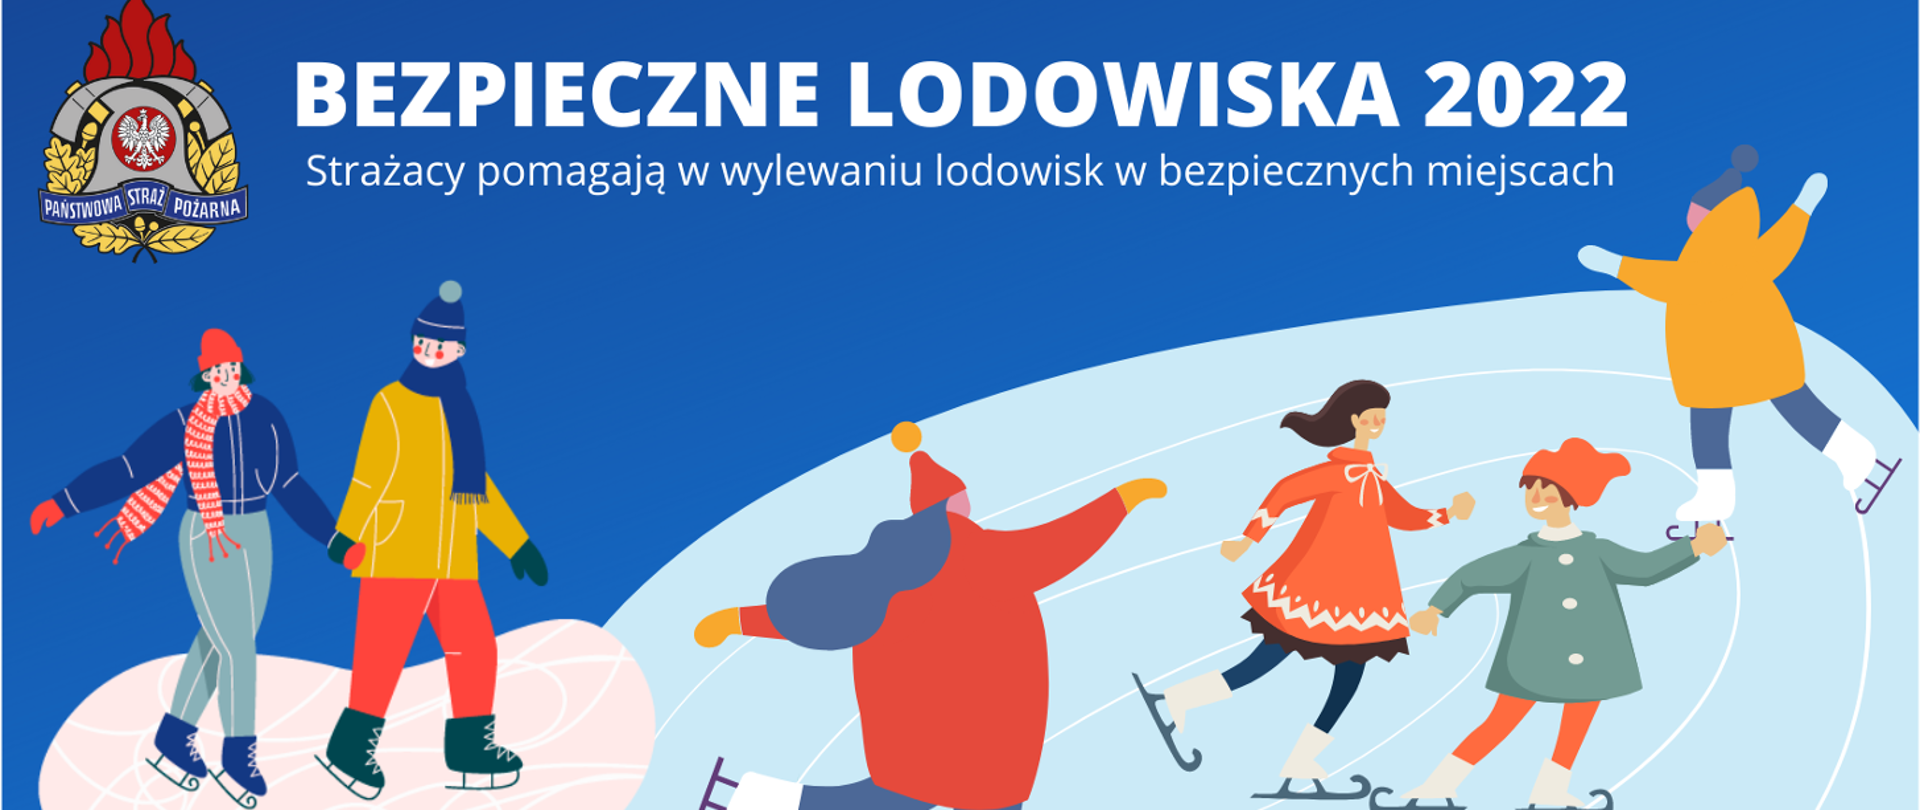 Logo akcji Bezpieczne Lodowiska 2022. Na niebieskim tle rysunku widoczne są dzieci jeżdżące na łyżwach.